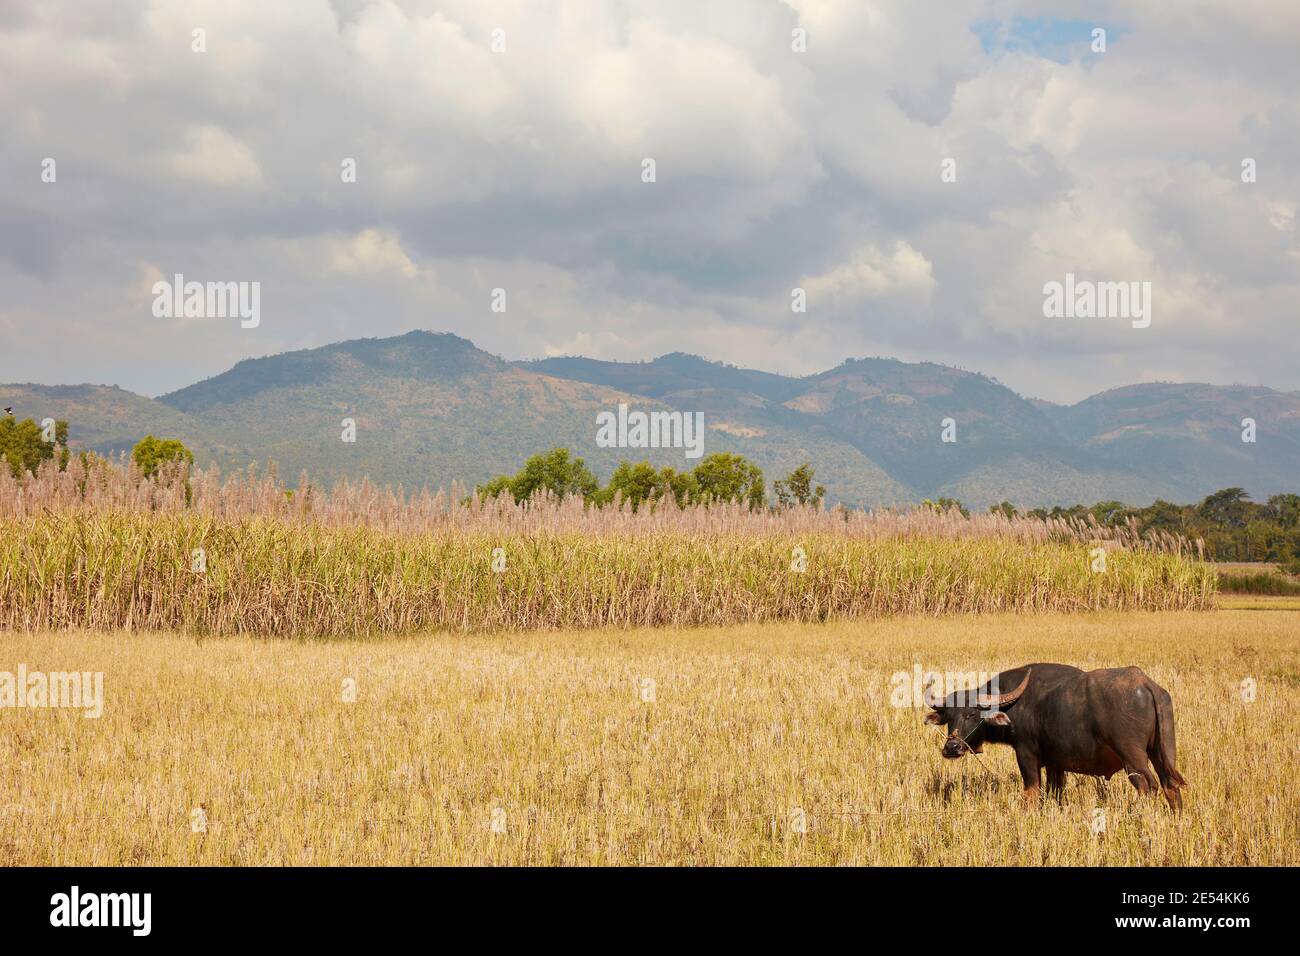 Un bufalo d'acqua domestico all'interno di una piantagione di canna da zucchero. Lago Inle, Myanmar. Foto Stock